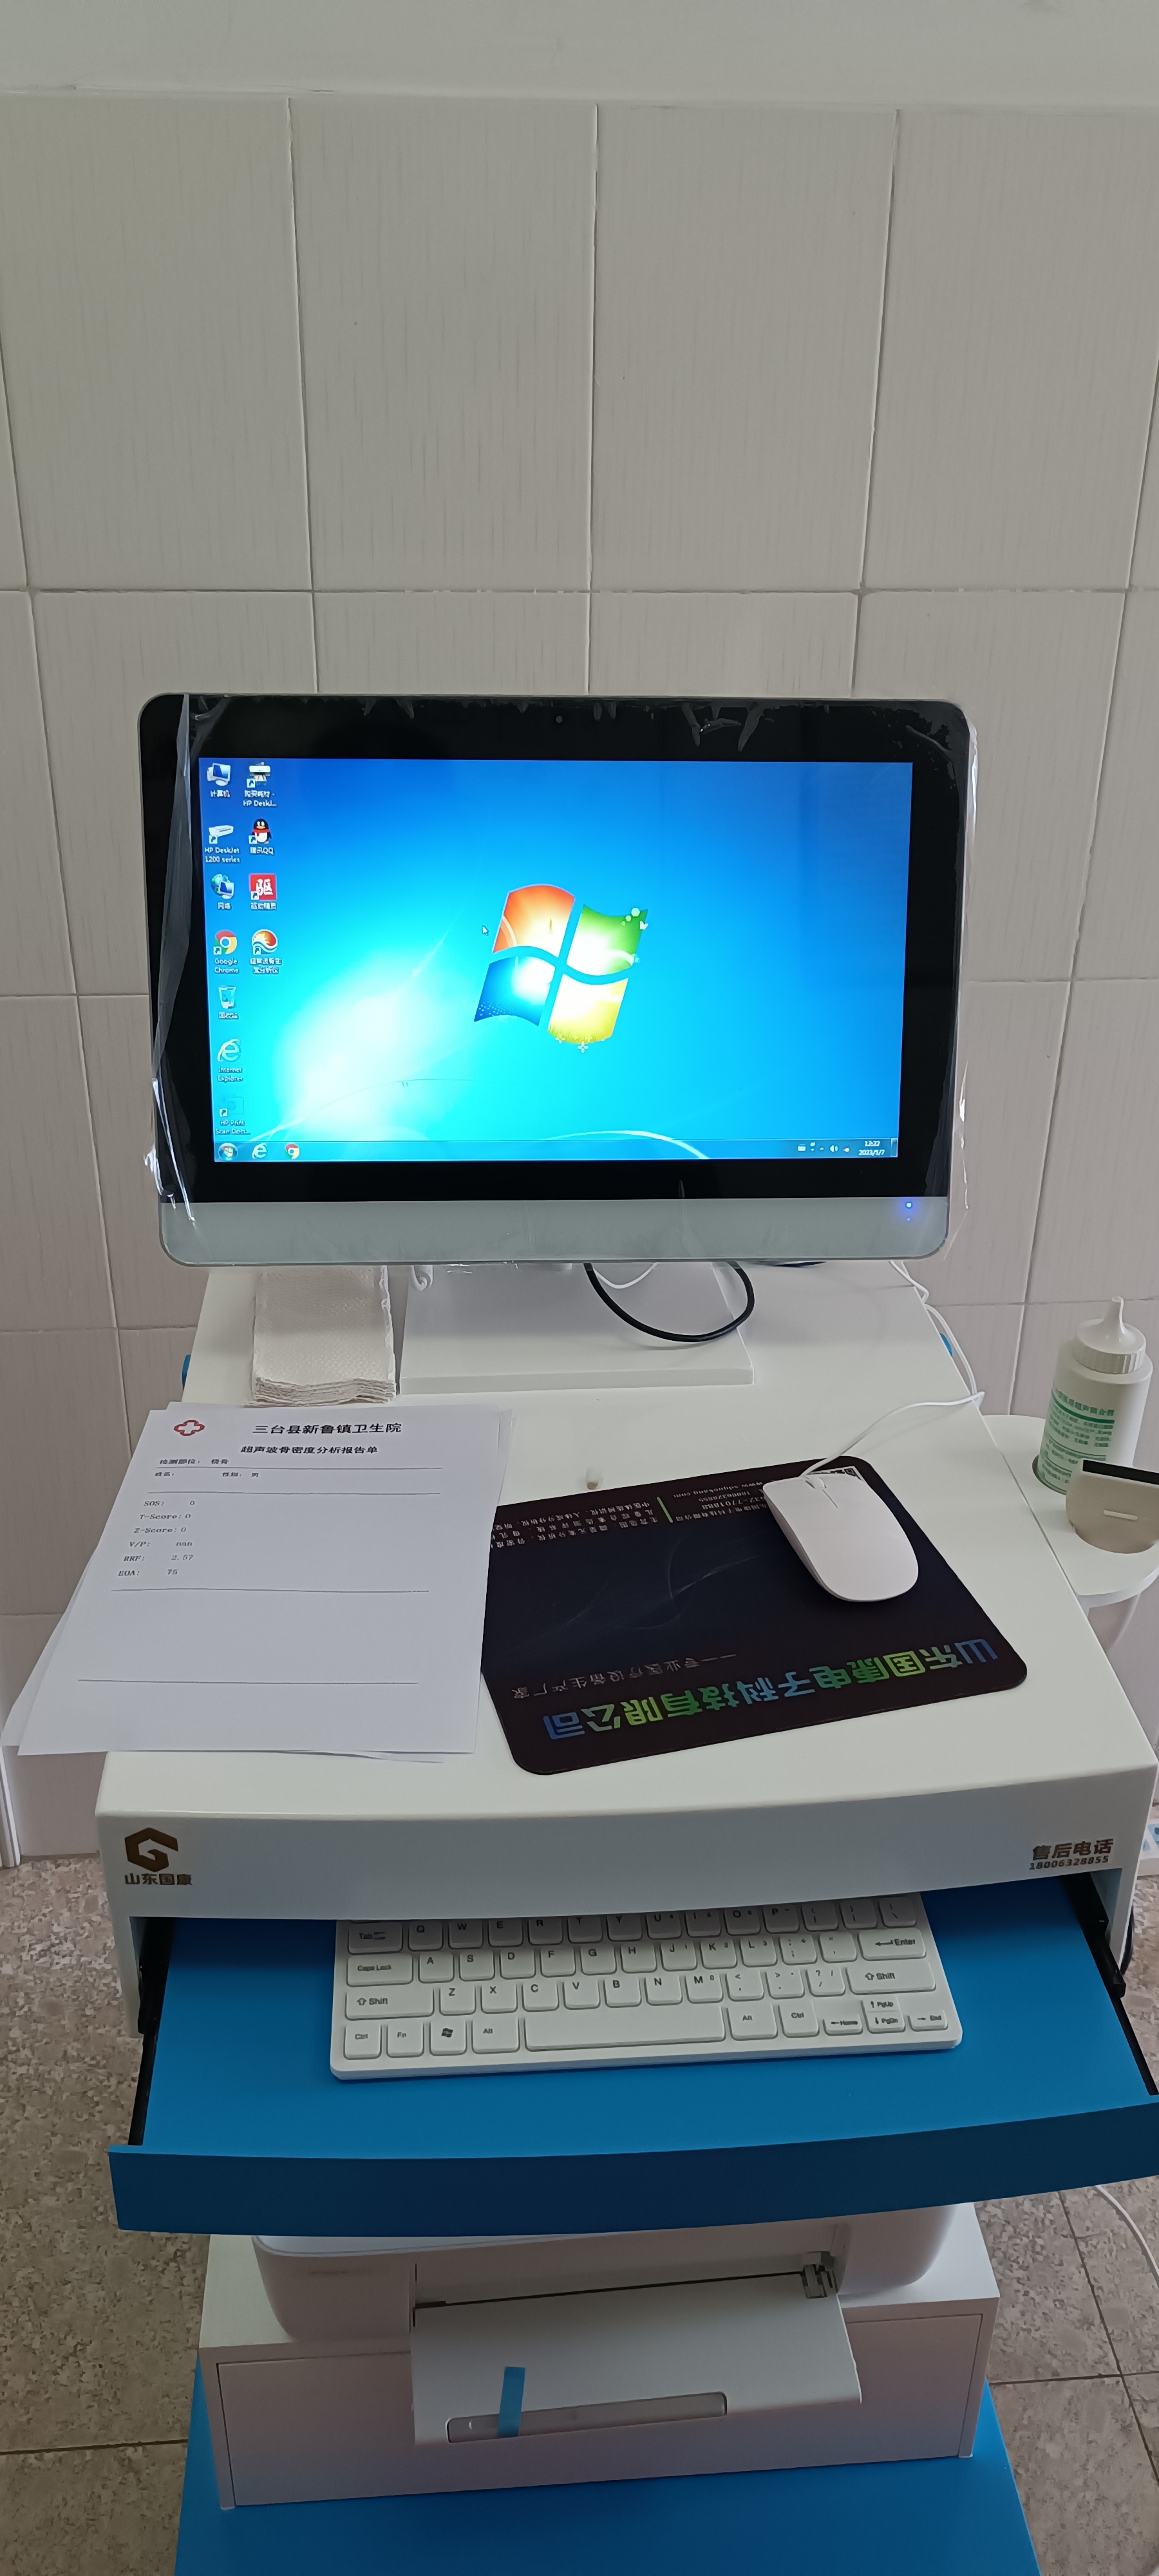 5.30超声骨密度分析仪在四川省绵阳市三台县新鲁镇卫生院装机培训